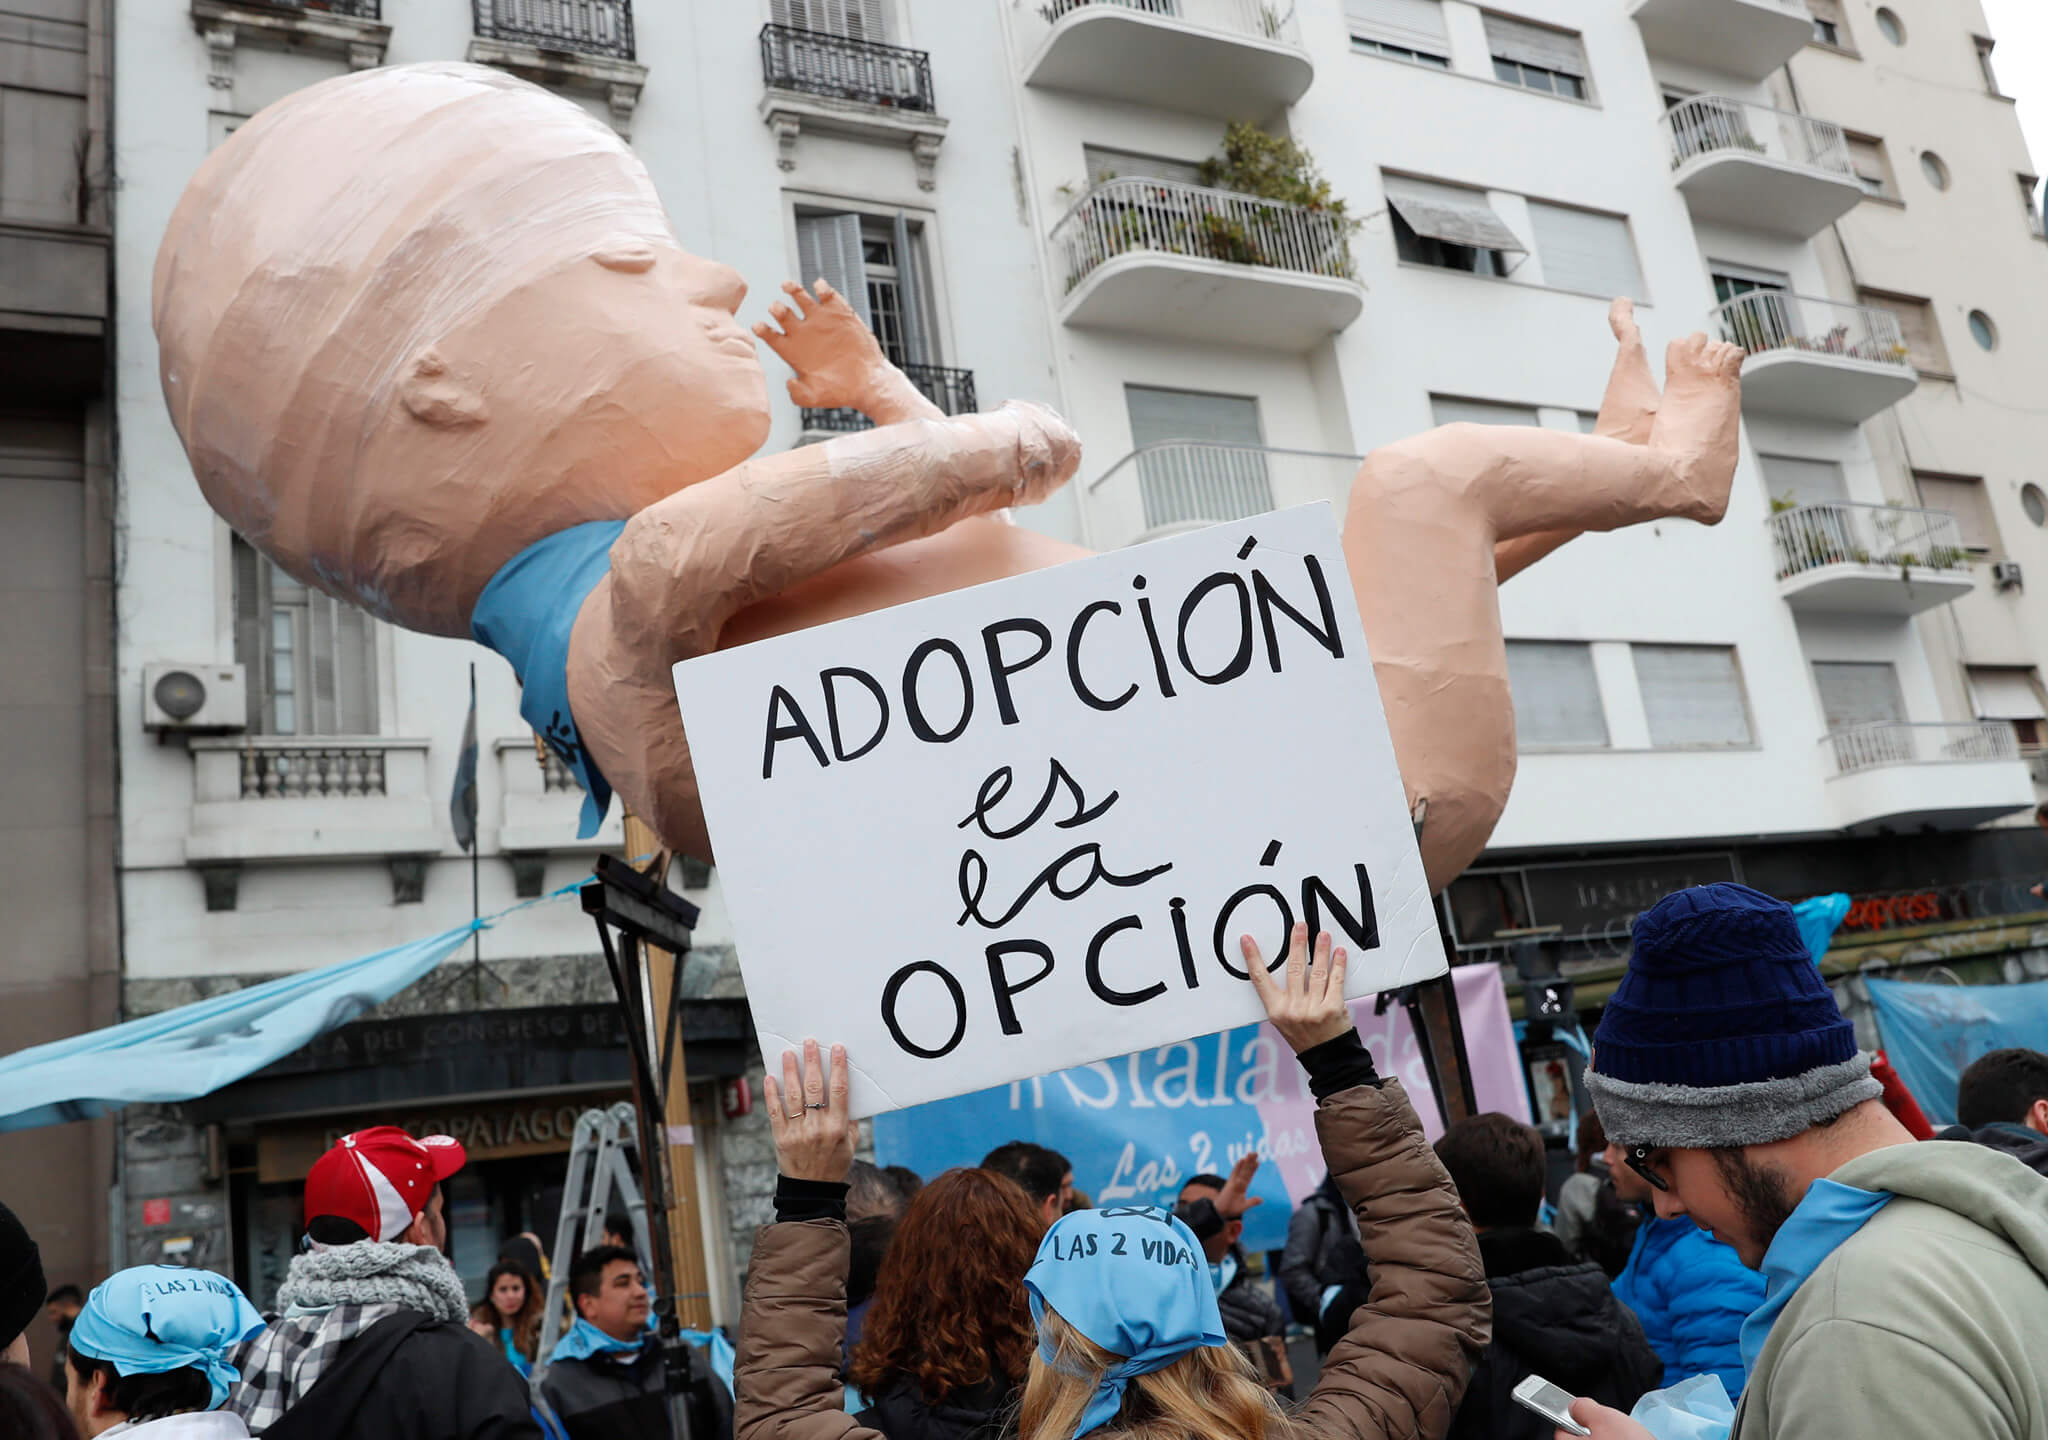 Adopción como alternativa al aborto